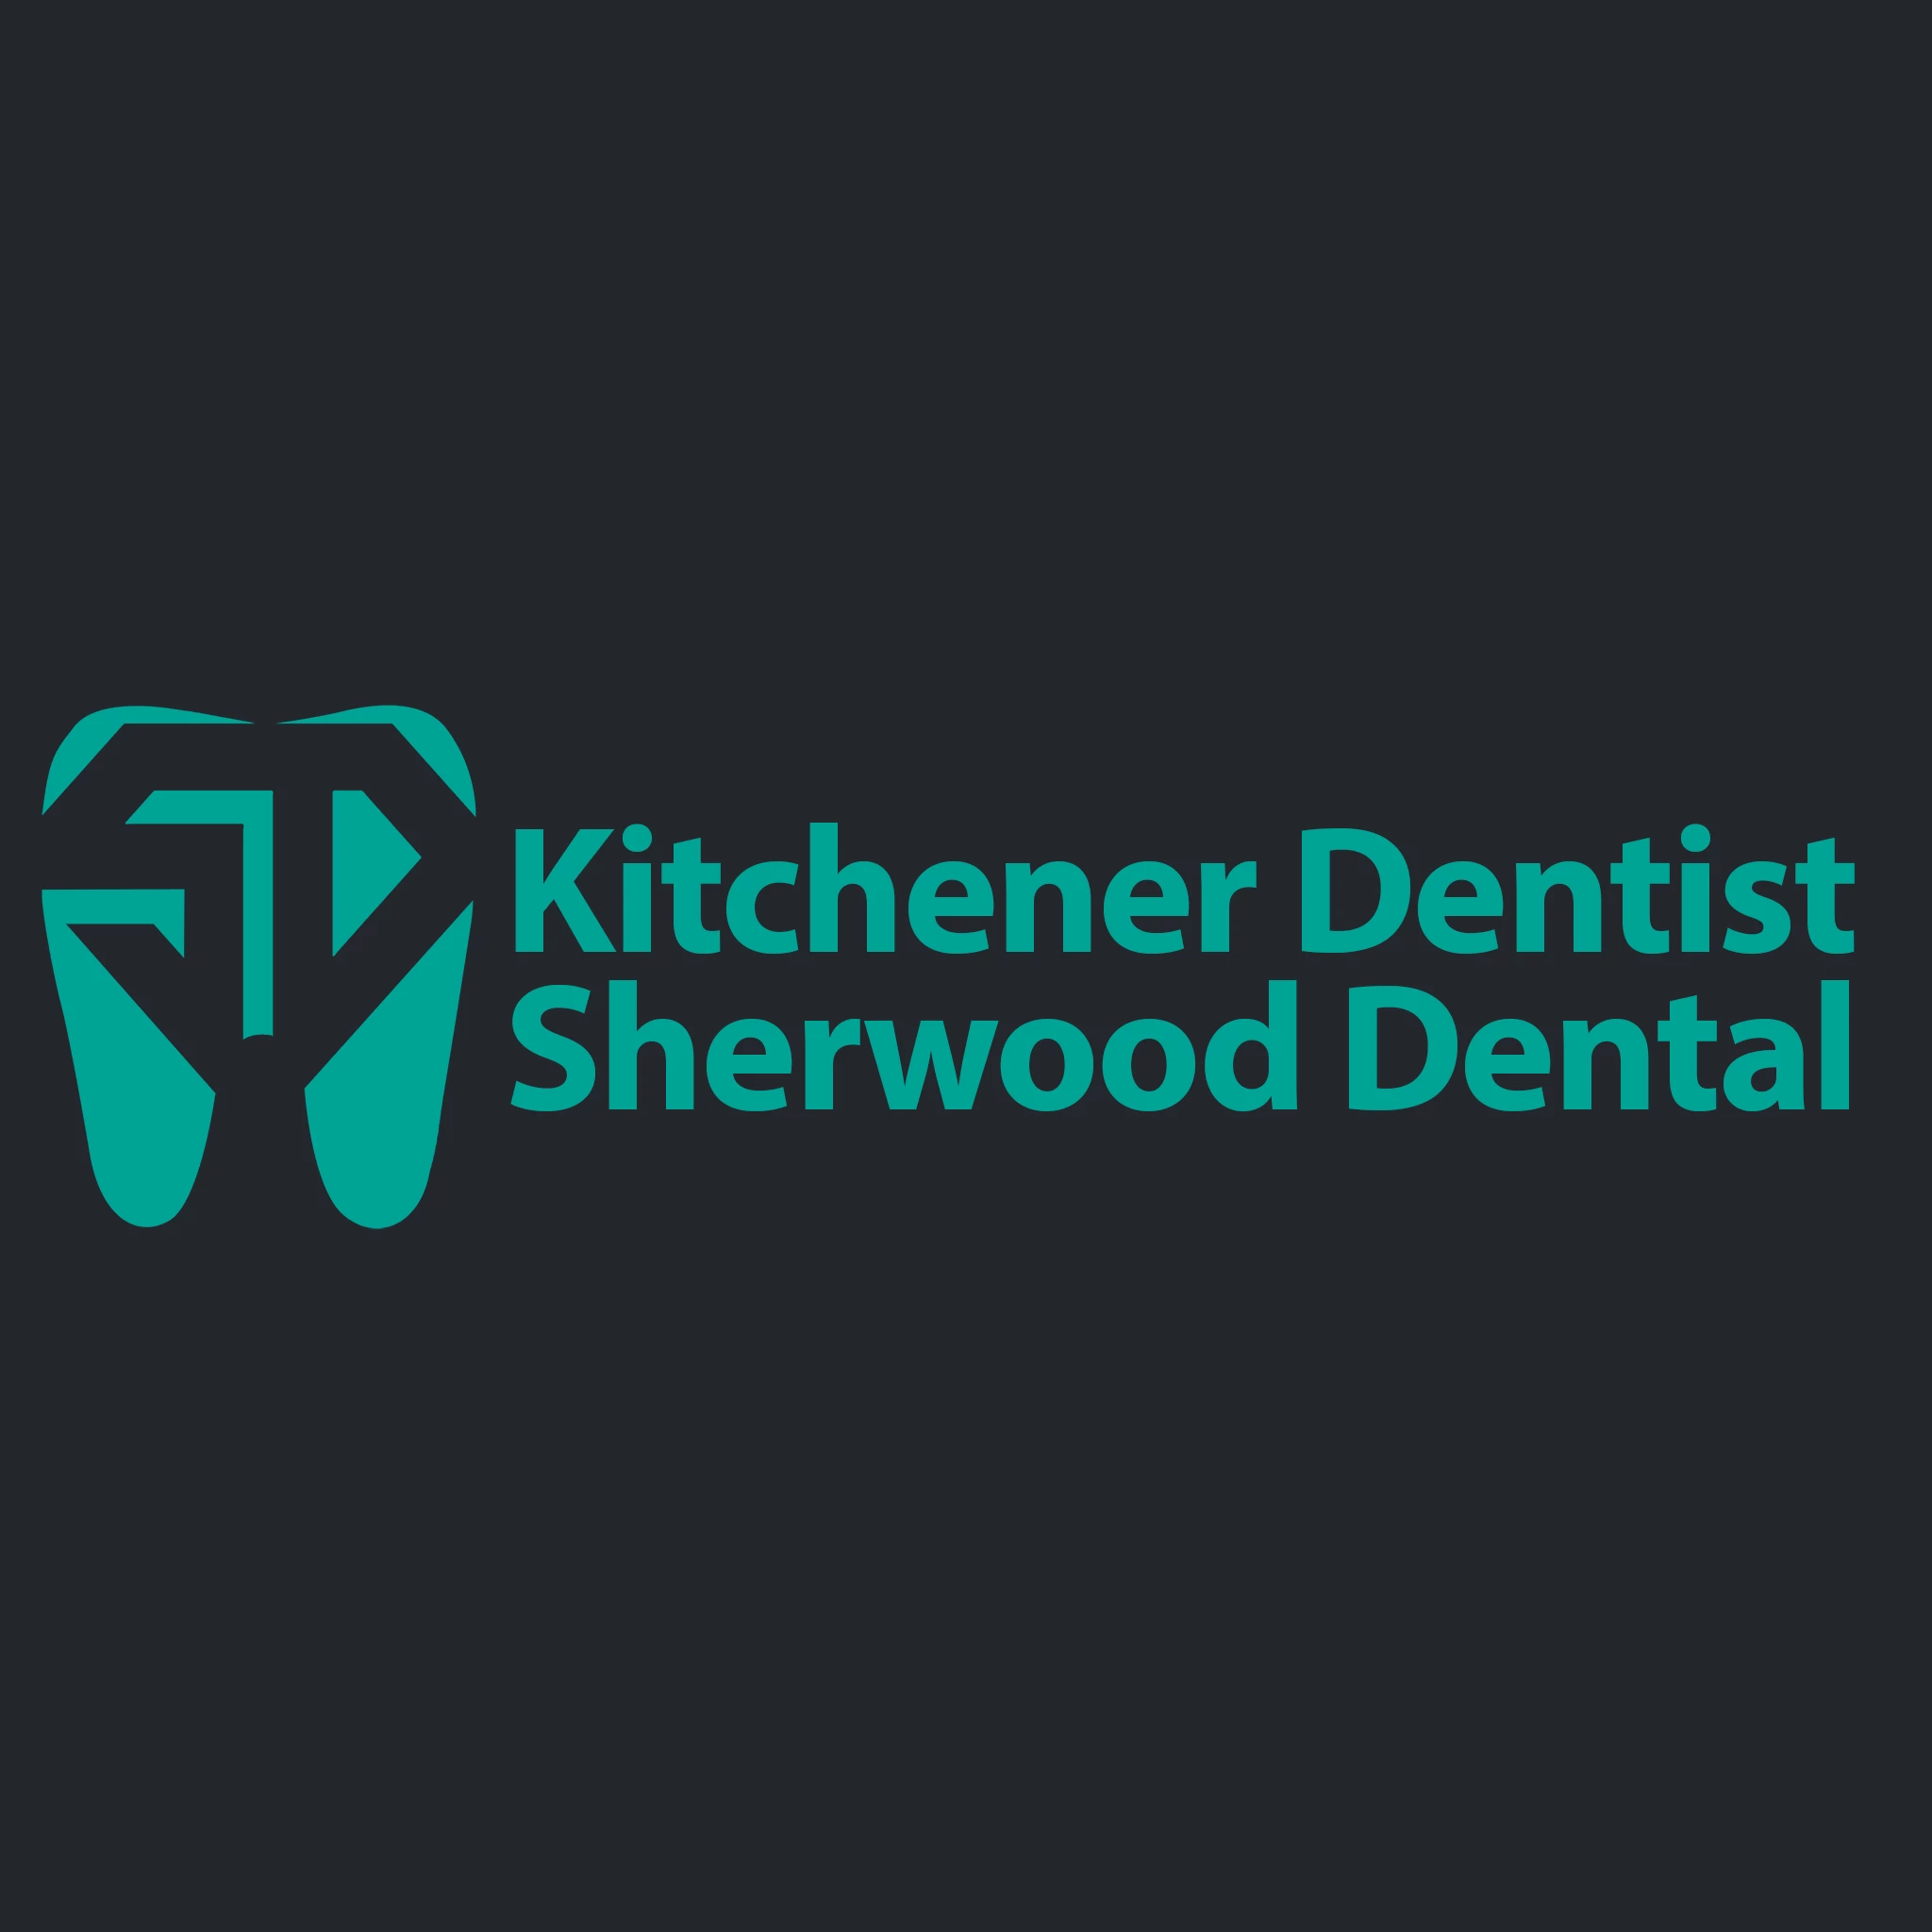 Kitchener Dentist Sherwood Dental